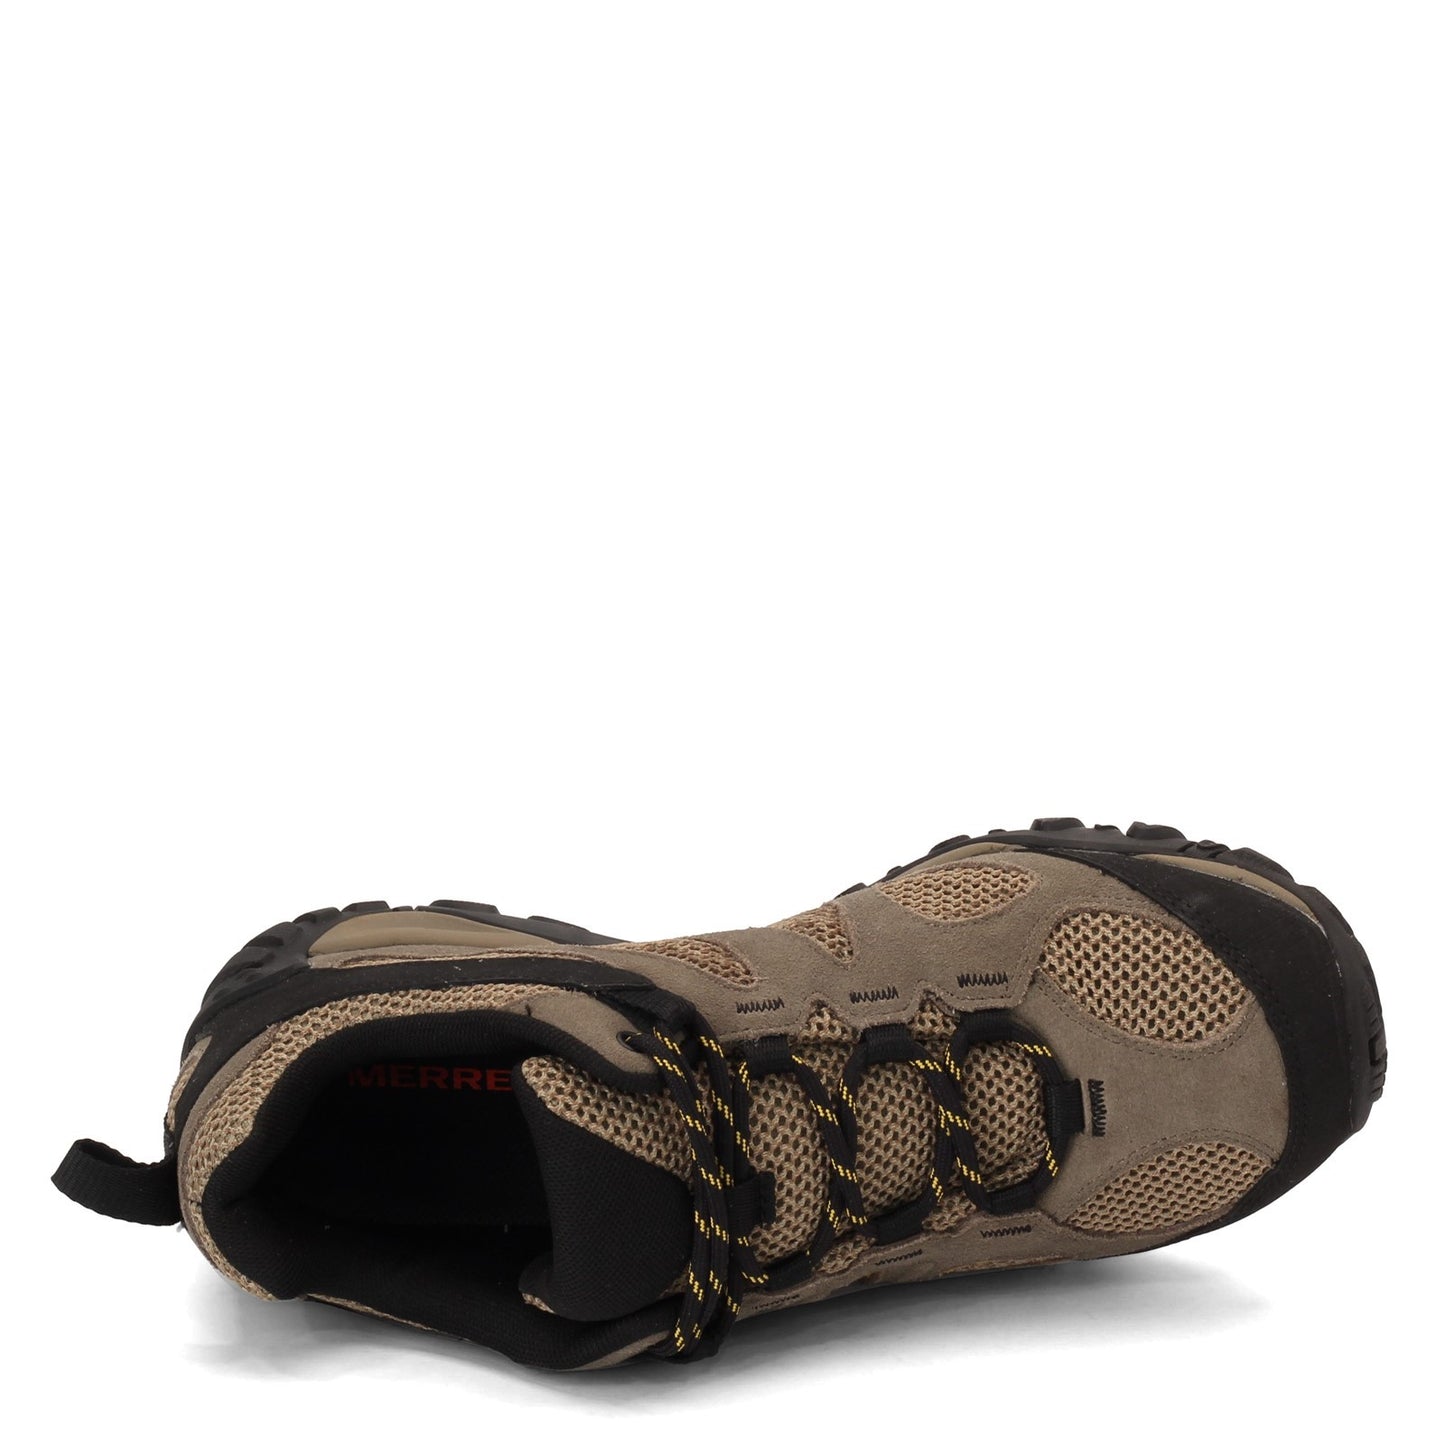 Peltz Shoes  Men's Merrell Yokota 2 Hiking Sneaker - Wide Width BOULDER J31281W